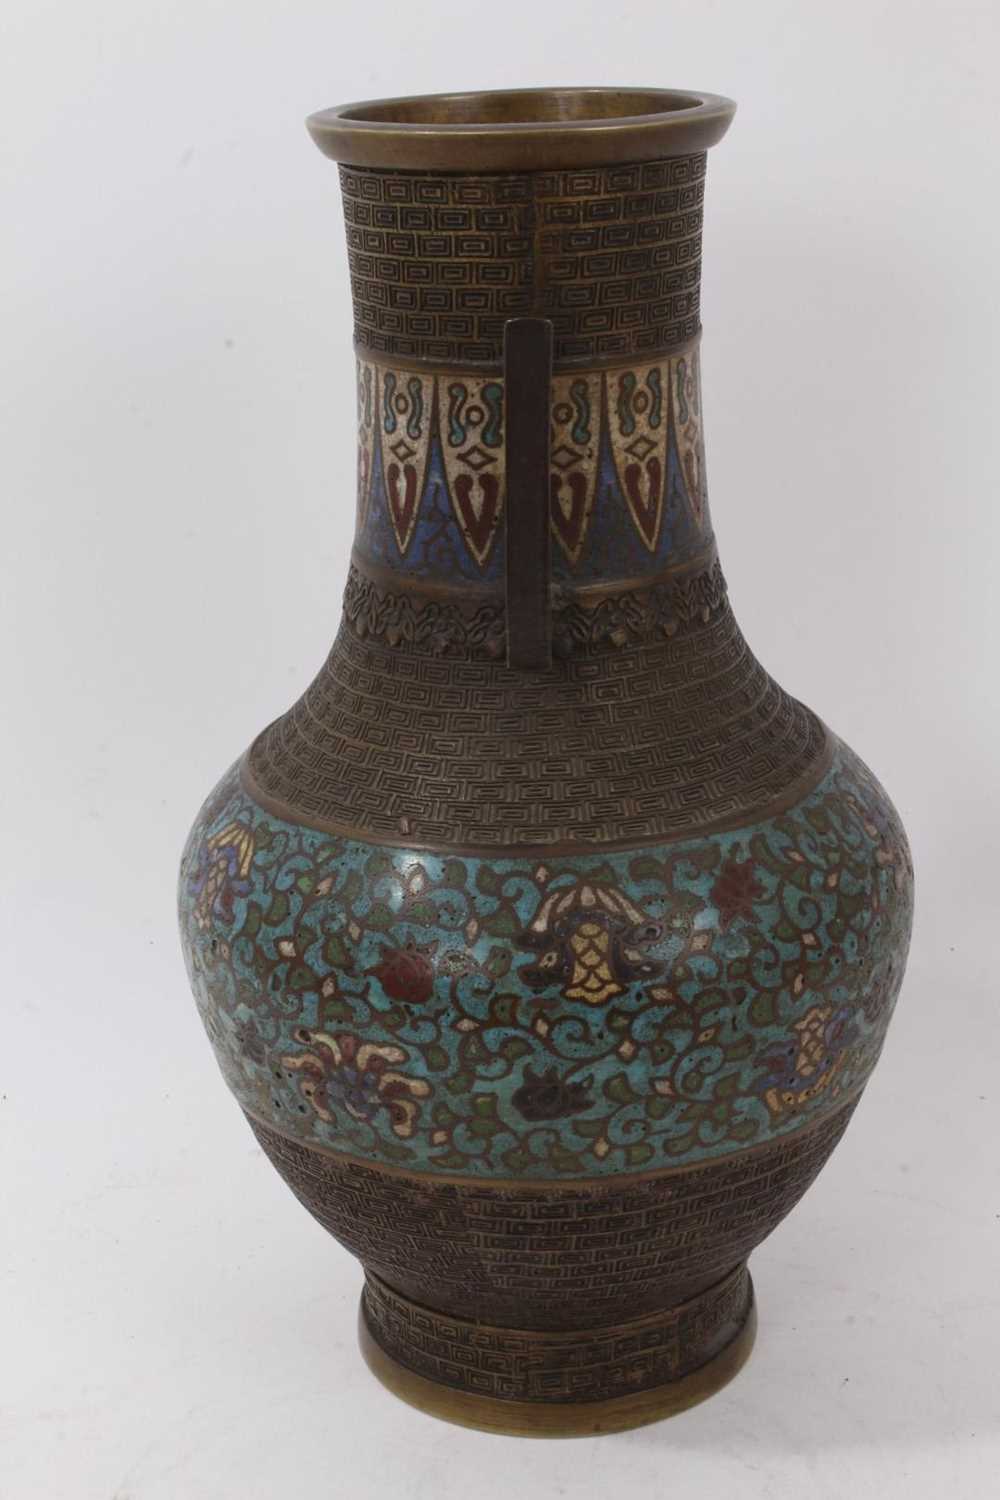 Antique Chinese cloisonné enamel bronze vase - Image 2 of 6